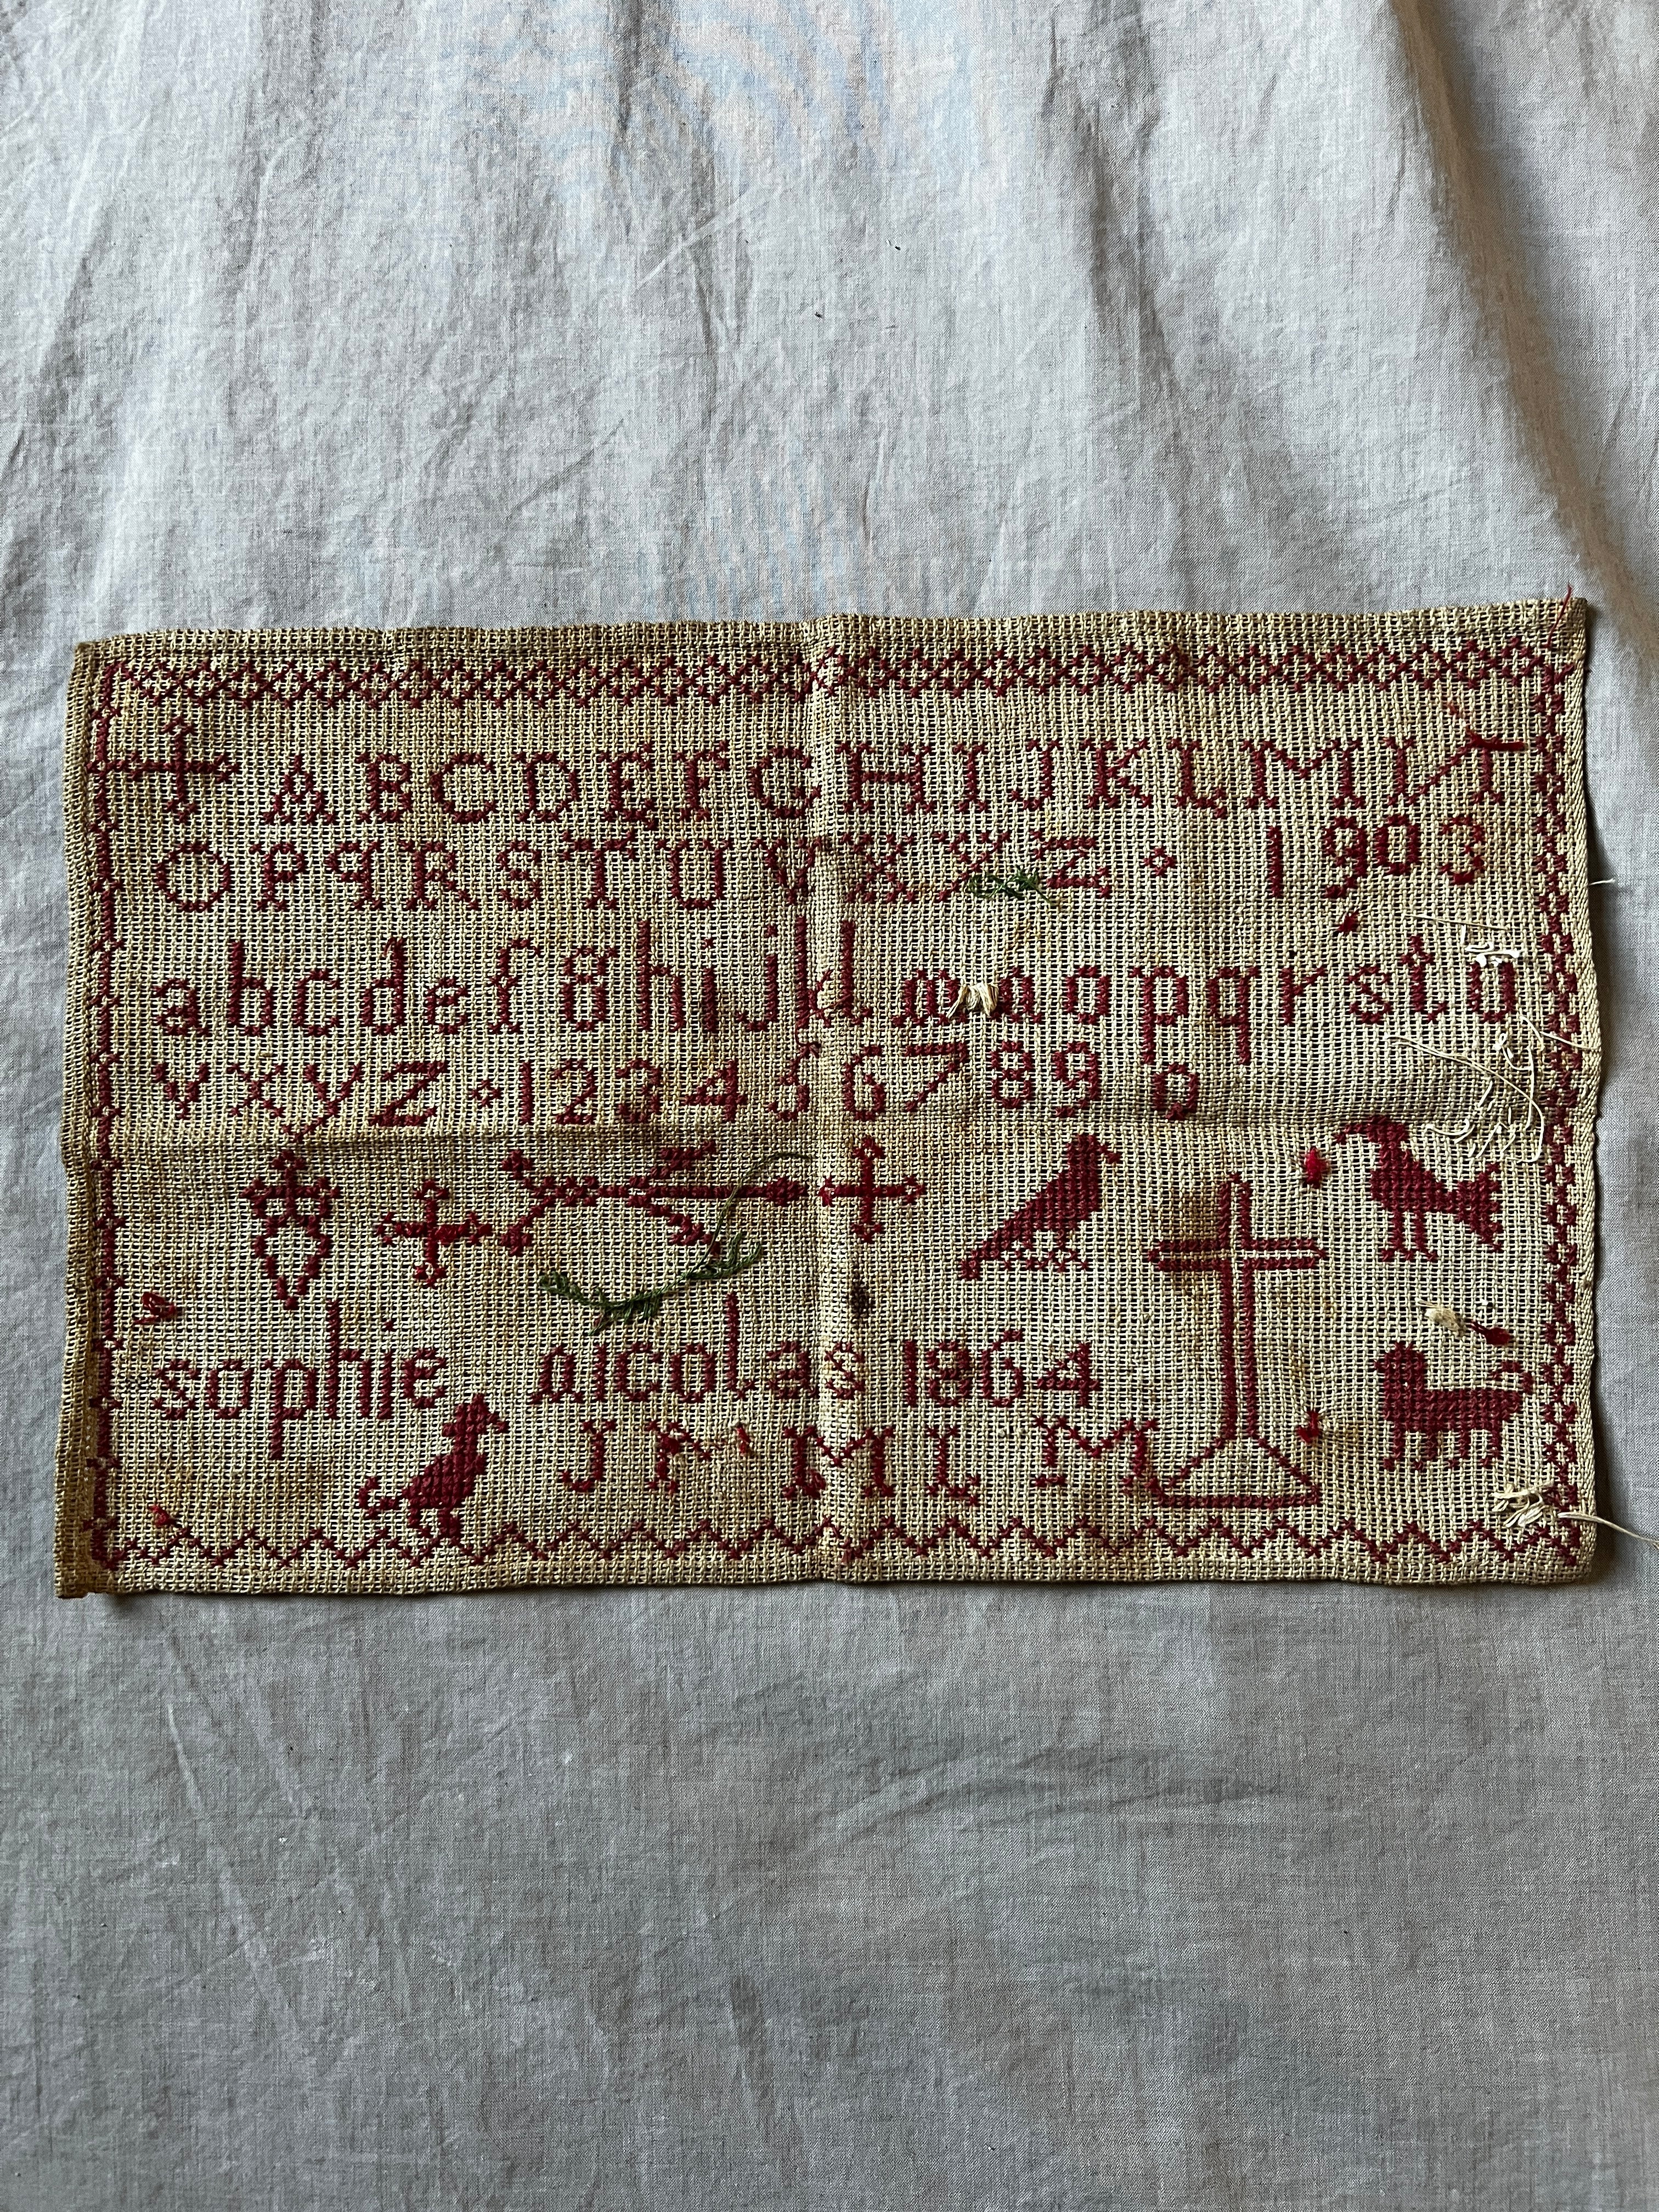 赤糸刺繍サンプラー – France Antique 銀色アンティーク